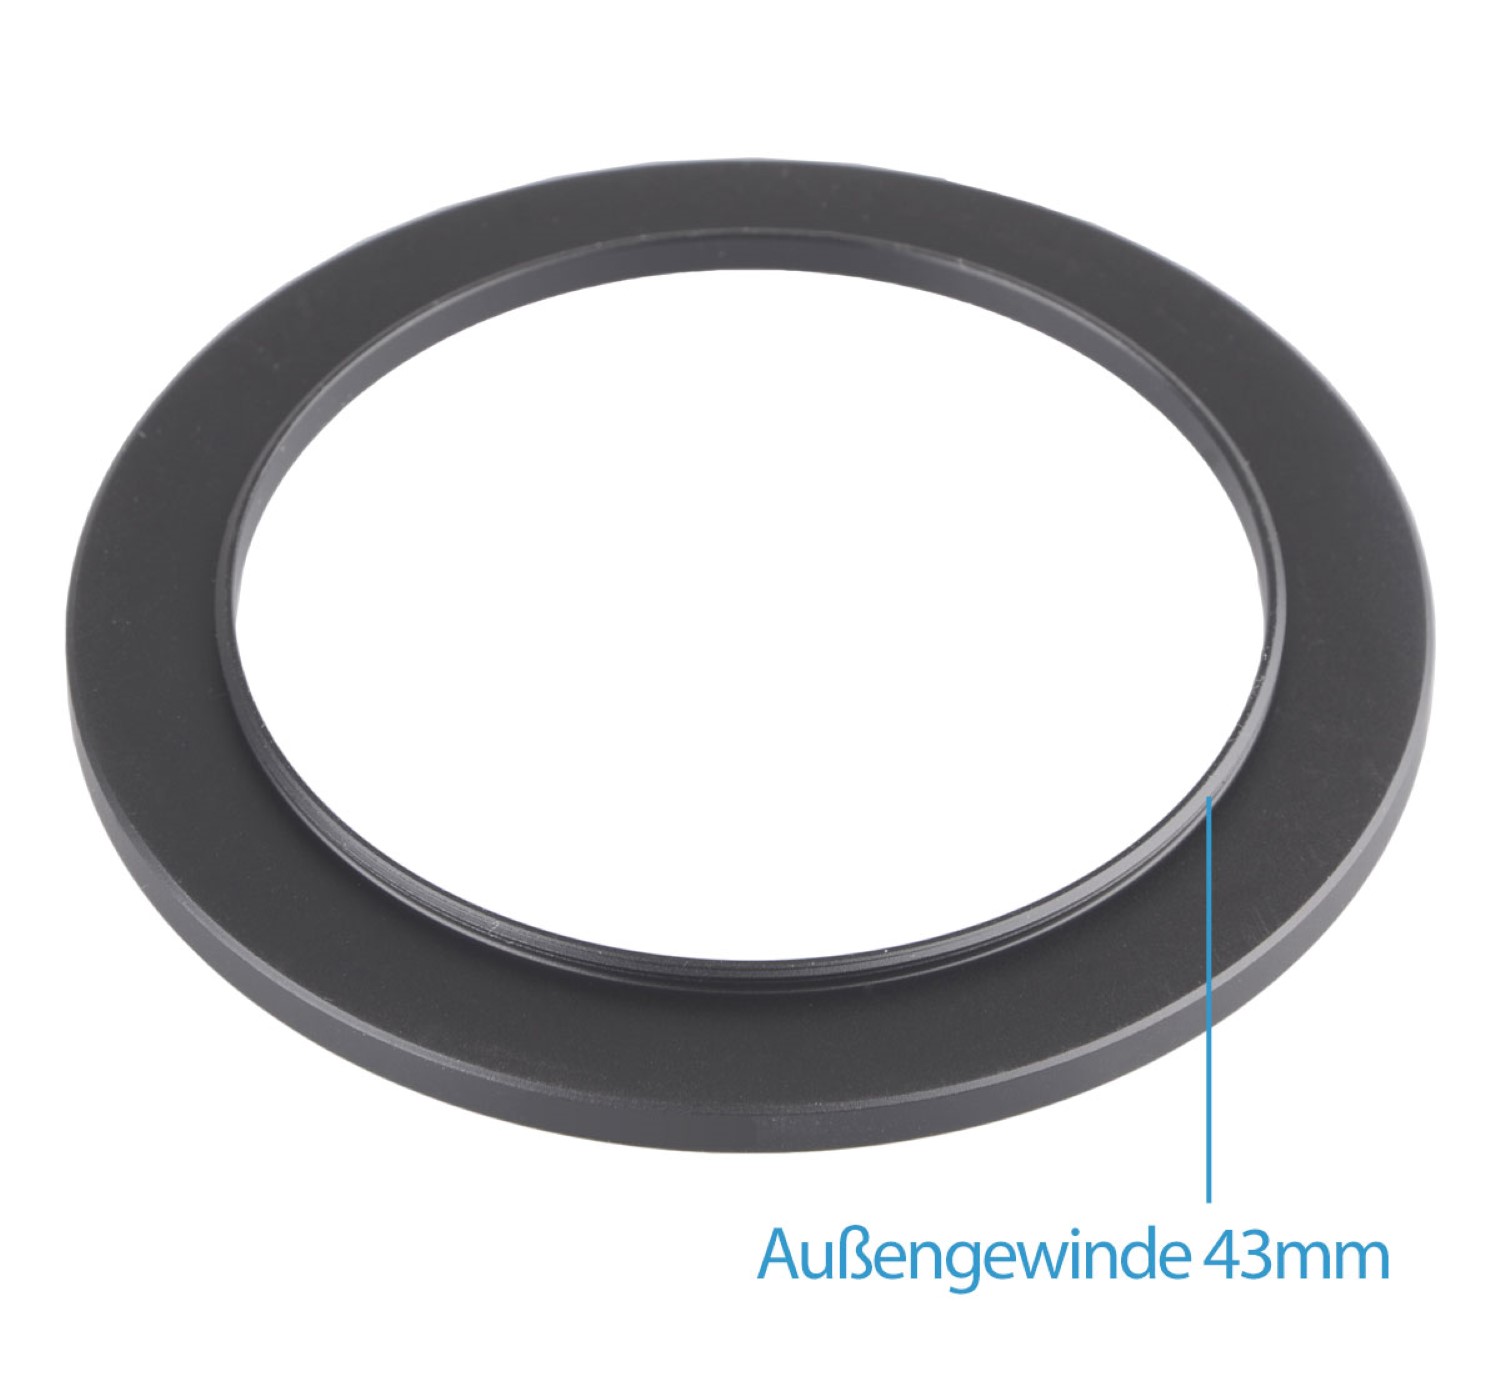 ayex Step-Up Ring 43mm - 55mm Reduzierring Adapterring Kompatibel m. allen Herstellern